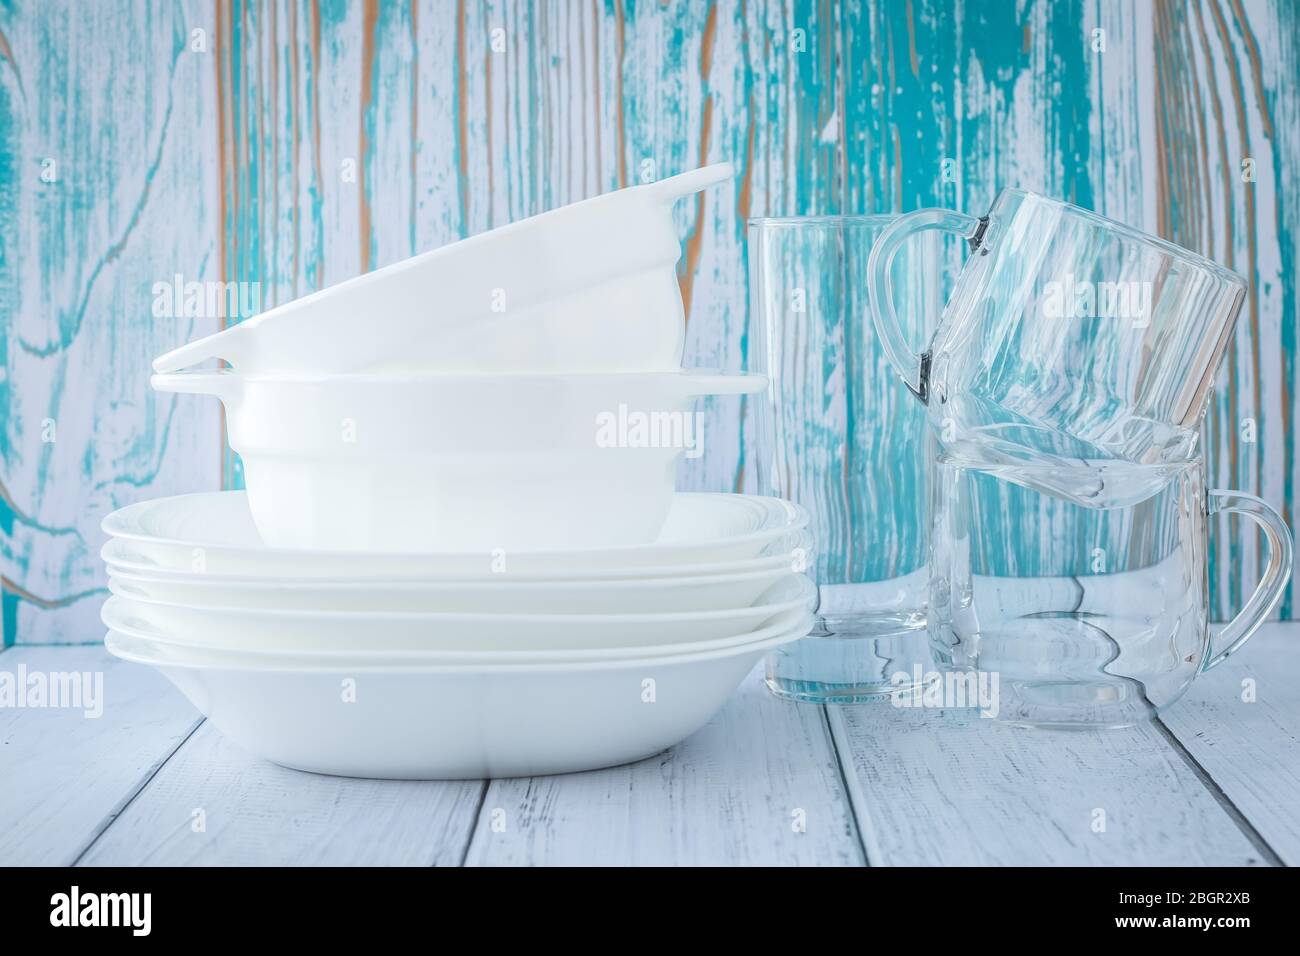 Ein Stapel von sauberen Geschirr auf einem türkisfarbenen Holzhintergrund. Weiße Keramikplatten und transparente Gläser Stockfoto